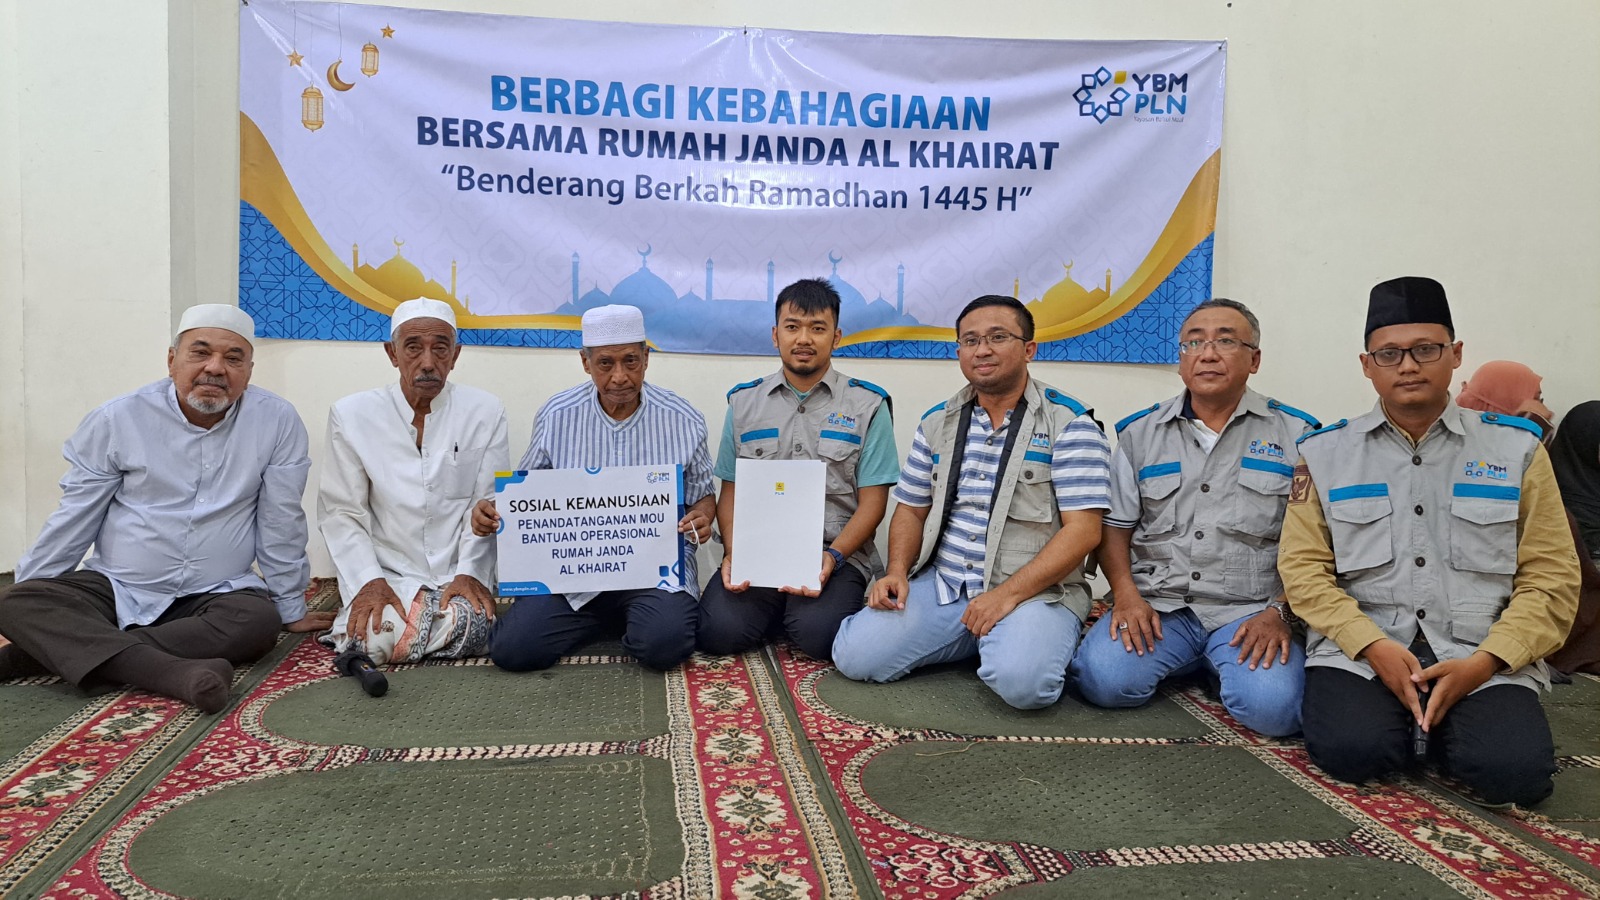 Sambut Bulan Suci Ramadhan PT PLN Beri Bantuan untuk Pengelola Rumah Janda Al Khairat